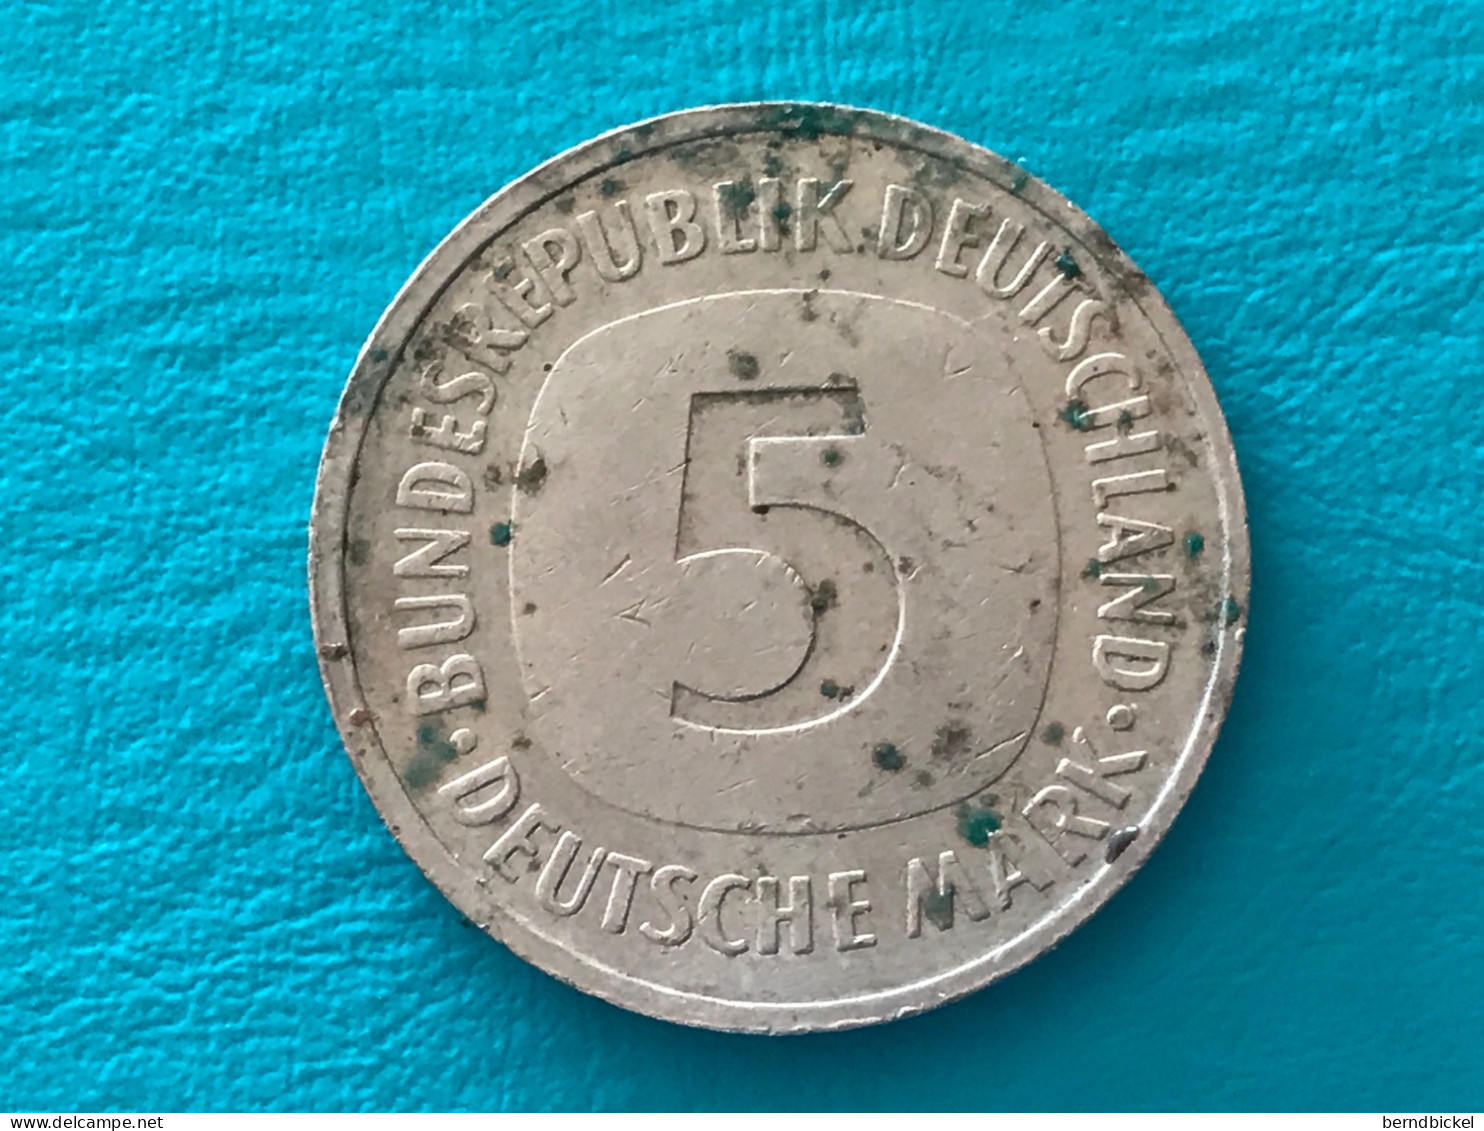 Münze Münzen Umlaufmünze Deutschland BRD 5 Mark 1992 Münzzeichen F - 5 Mark